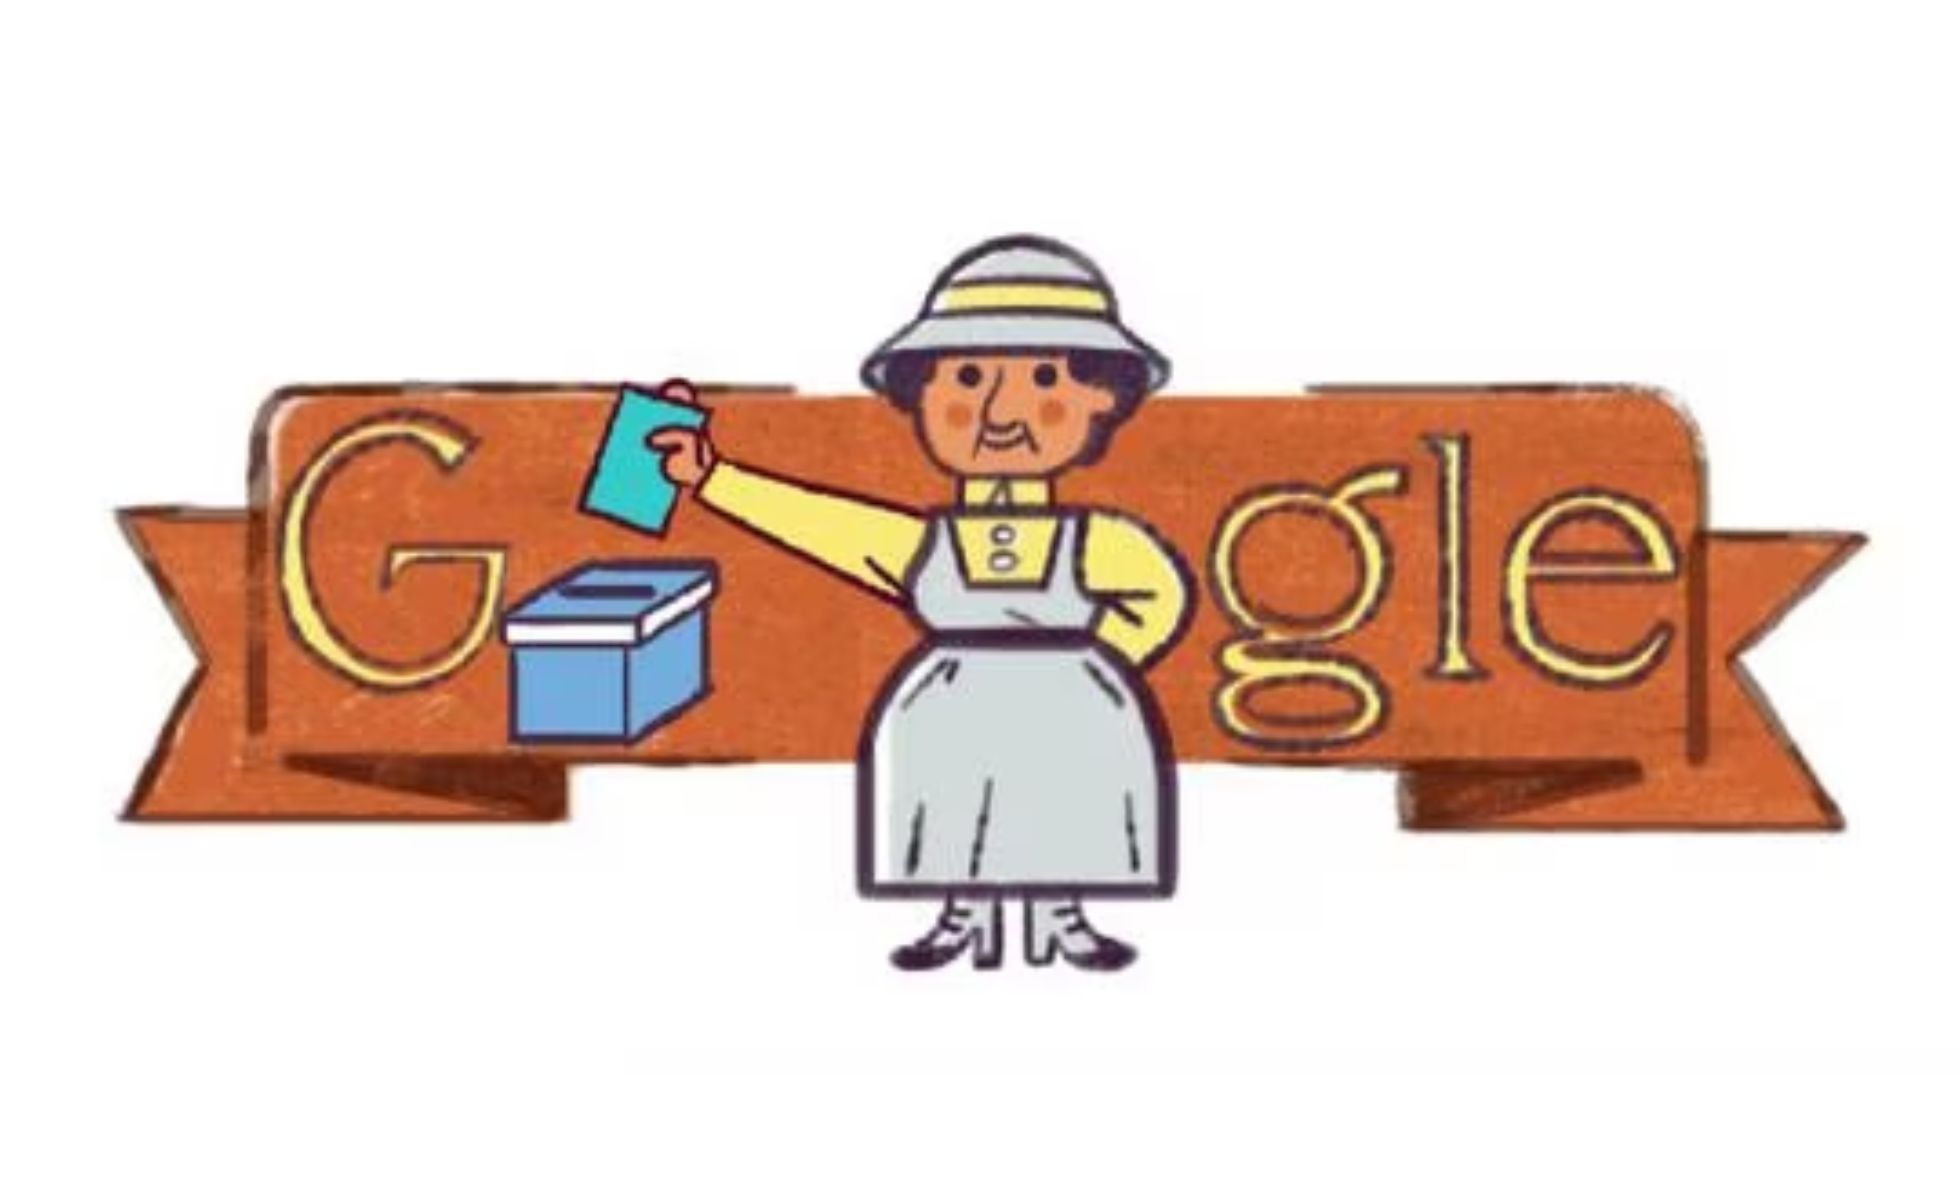 Quien es Julieta Lanteri, la mujer del Doodle de Google de hoy